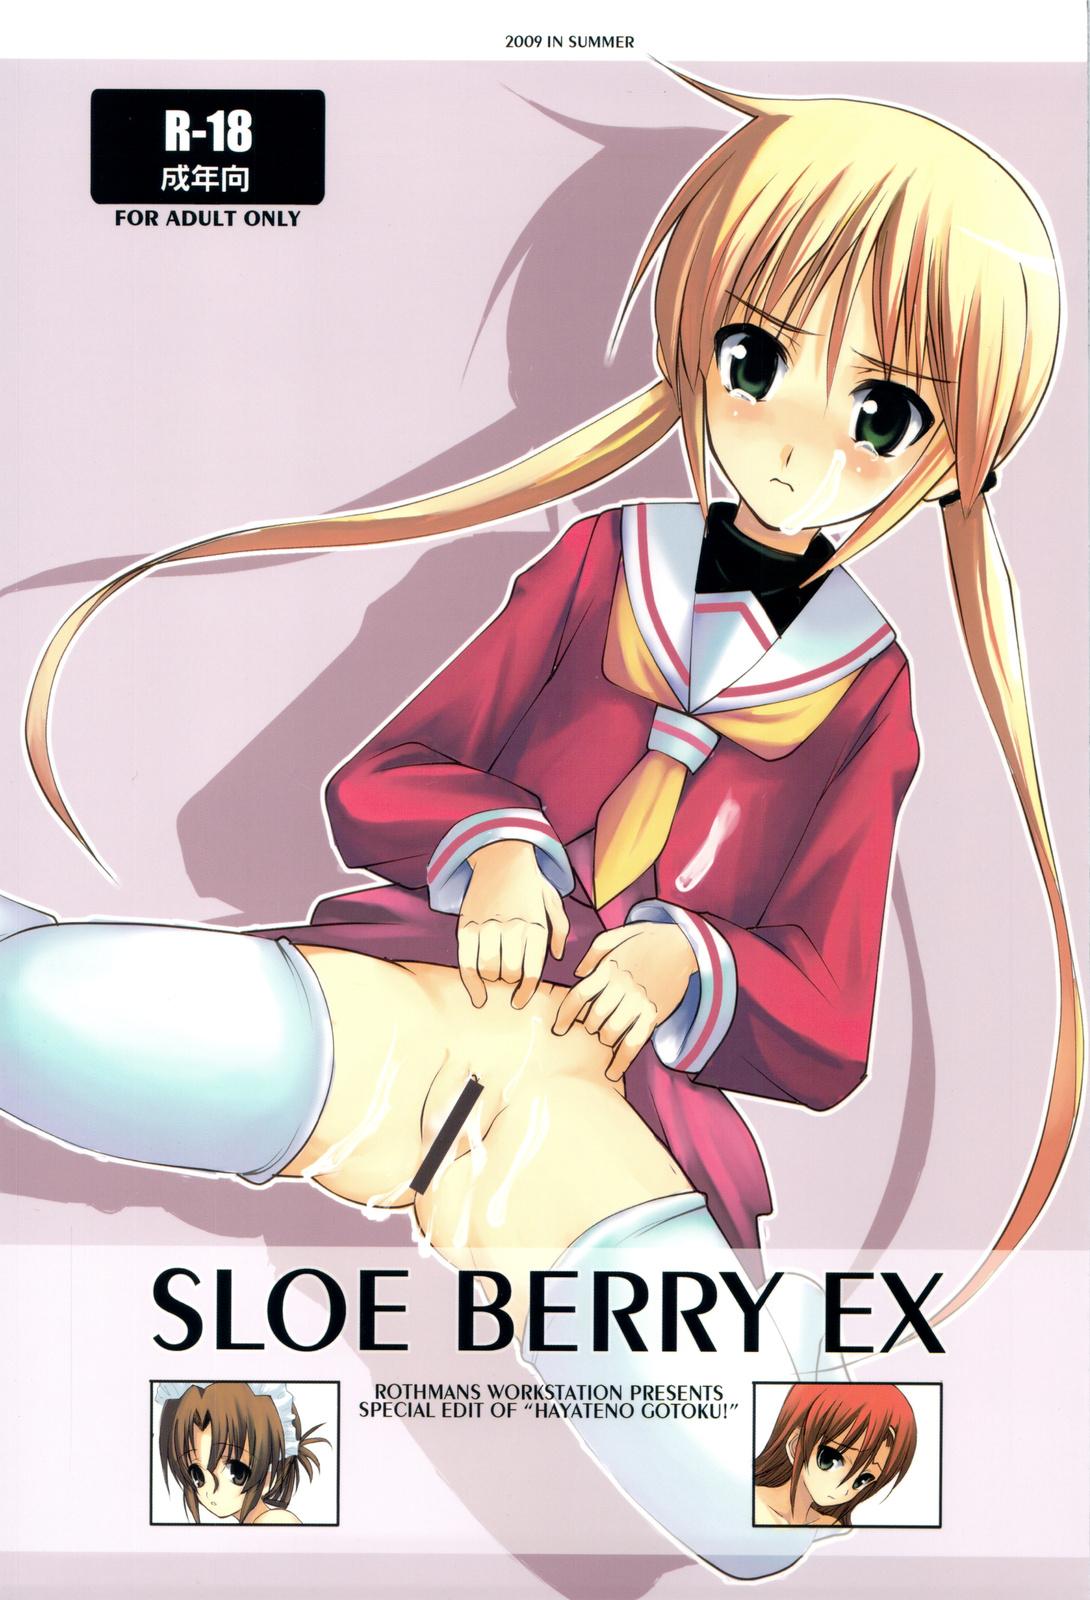 SLOE BERRY EX 0